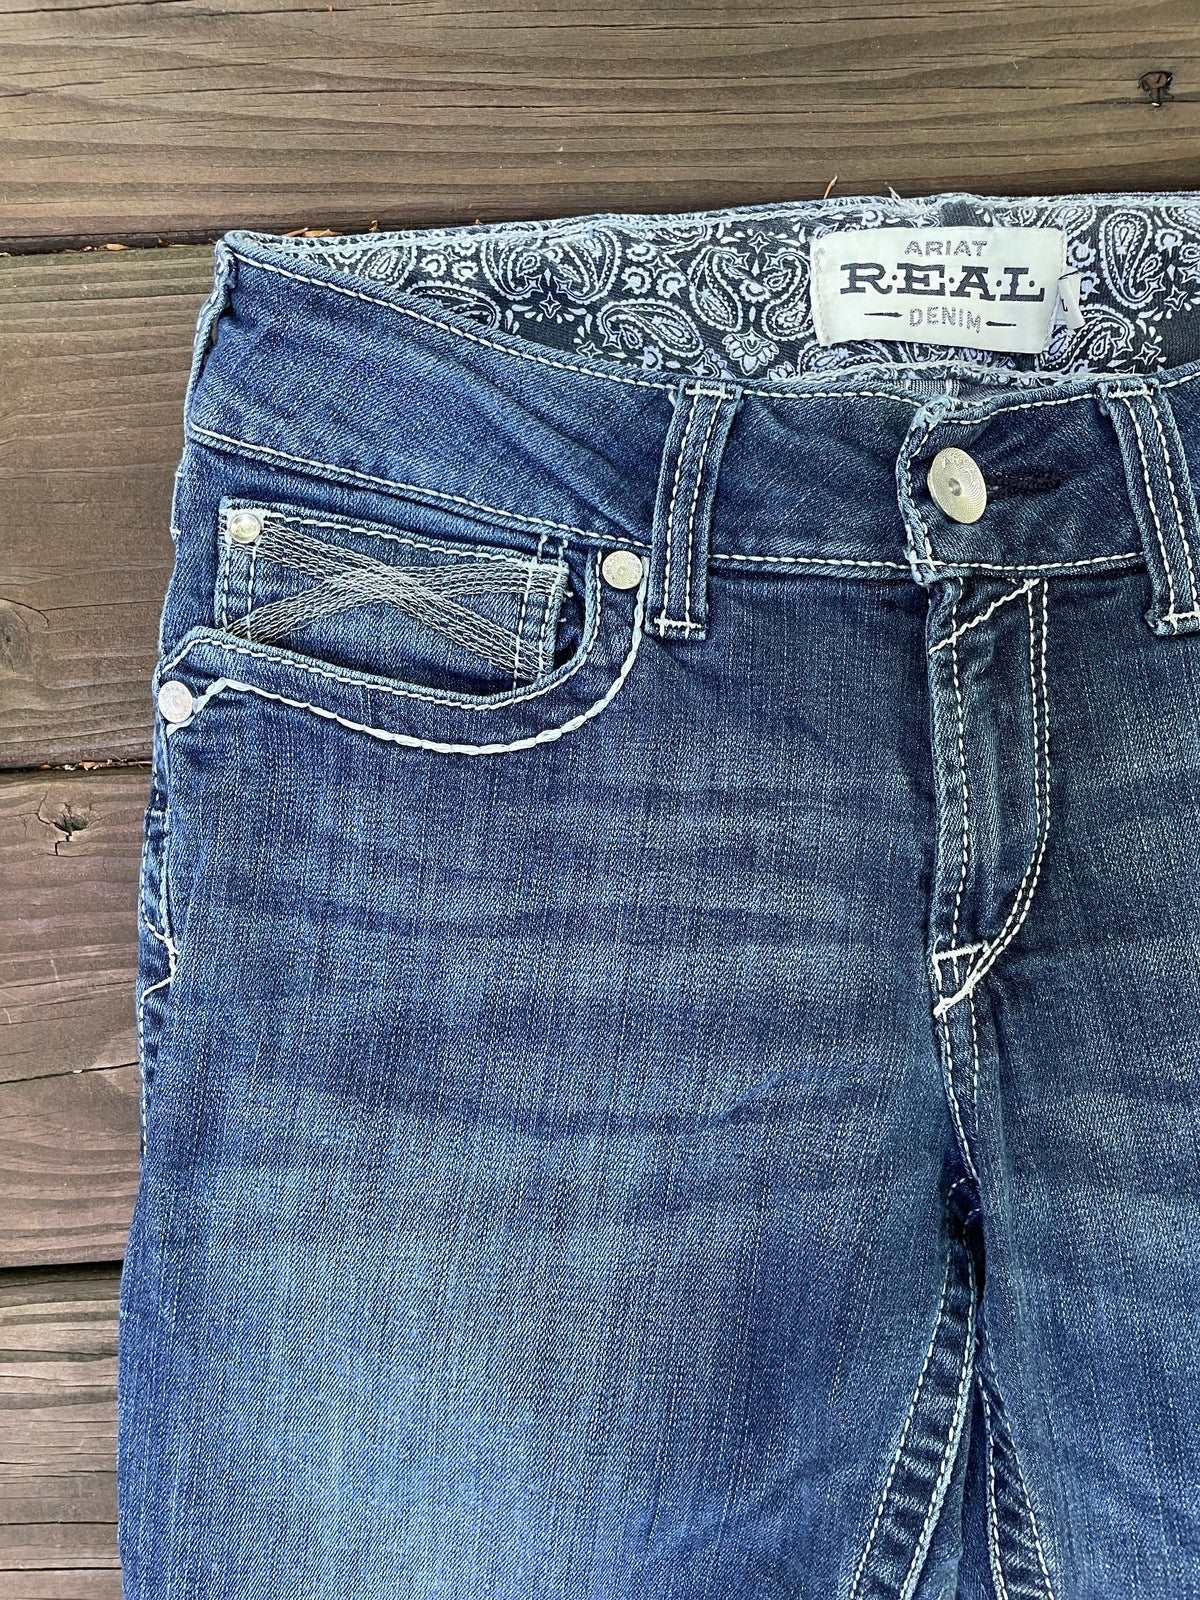 Ariat Real Denim Jeans - 29XL –ThriftedEquestrian